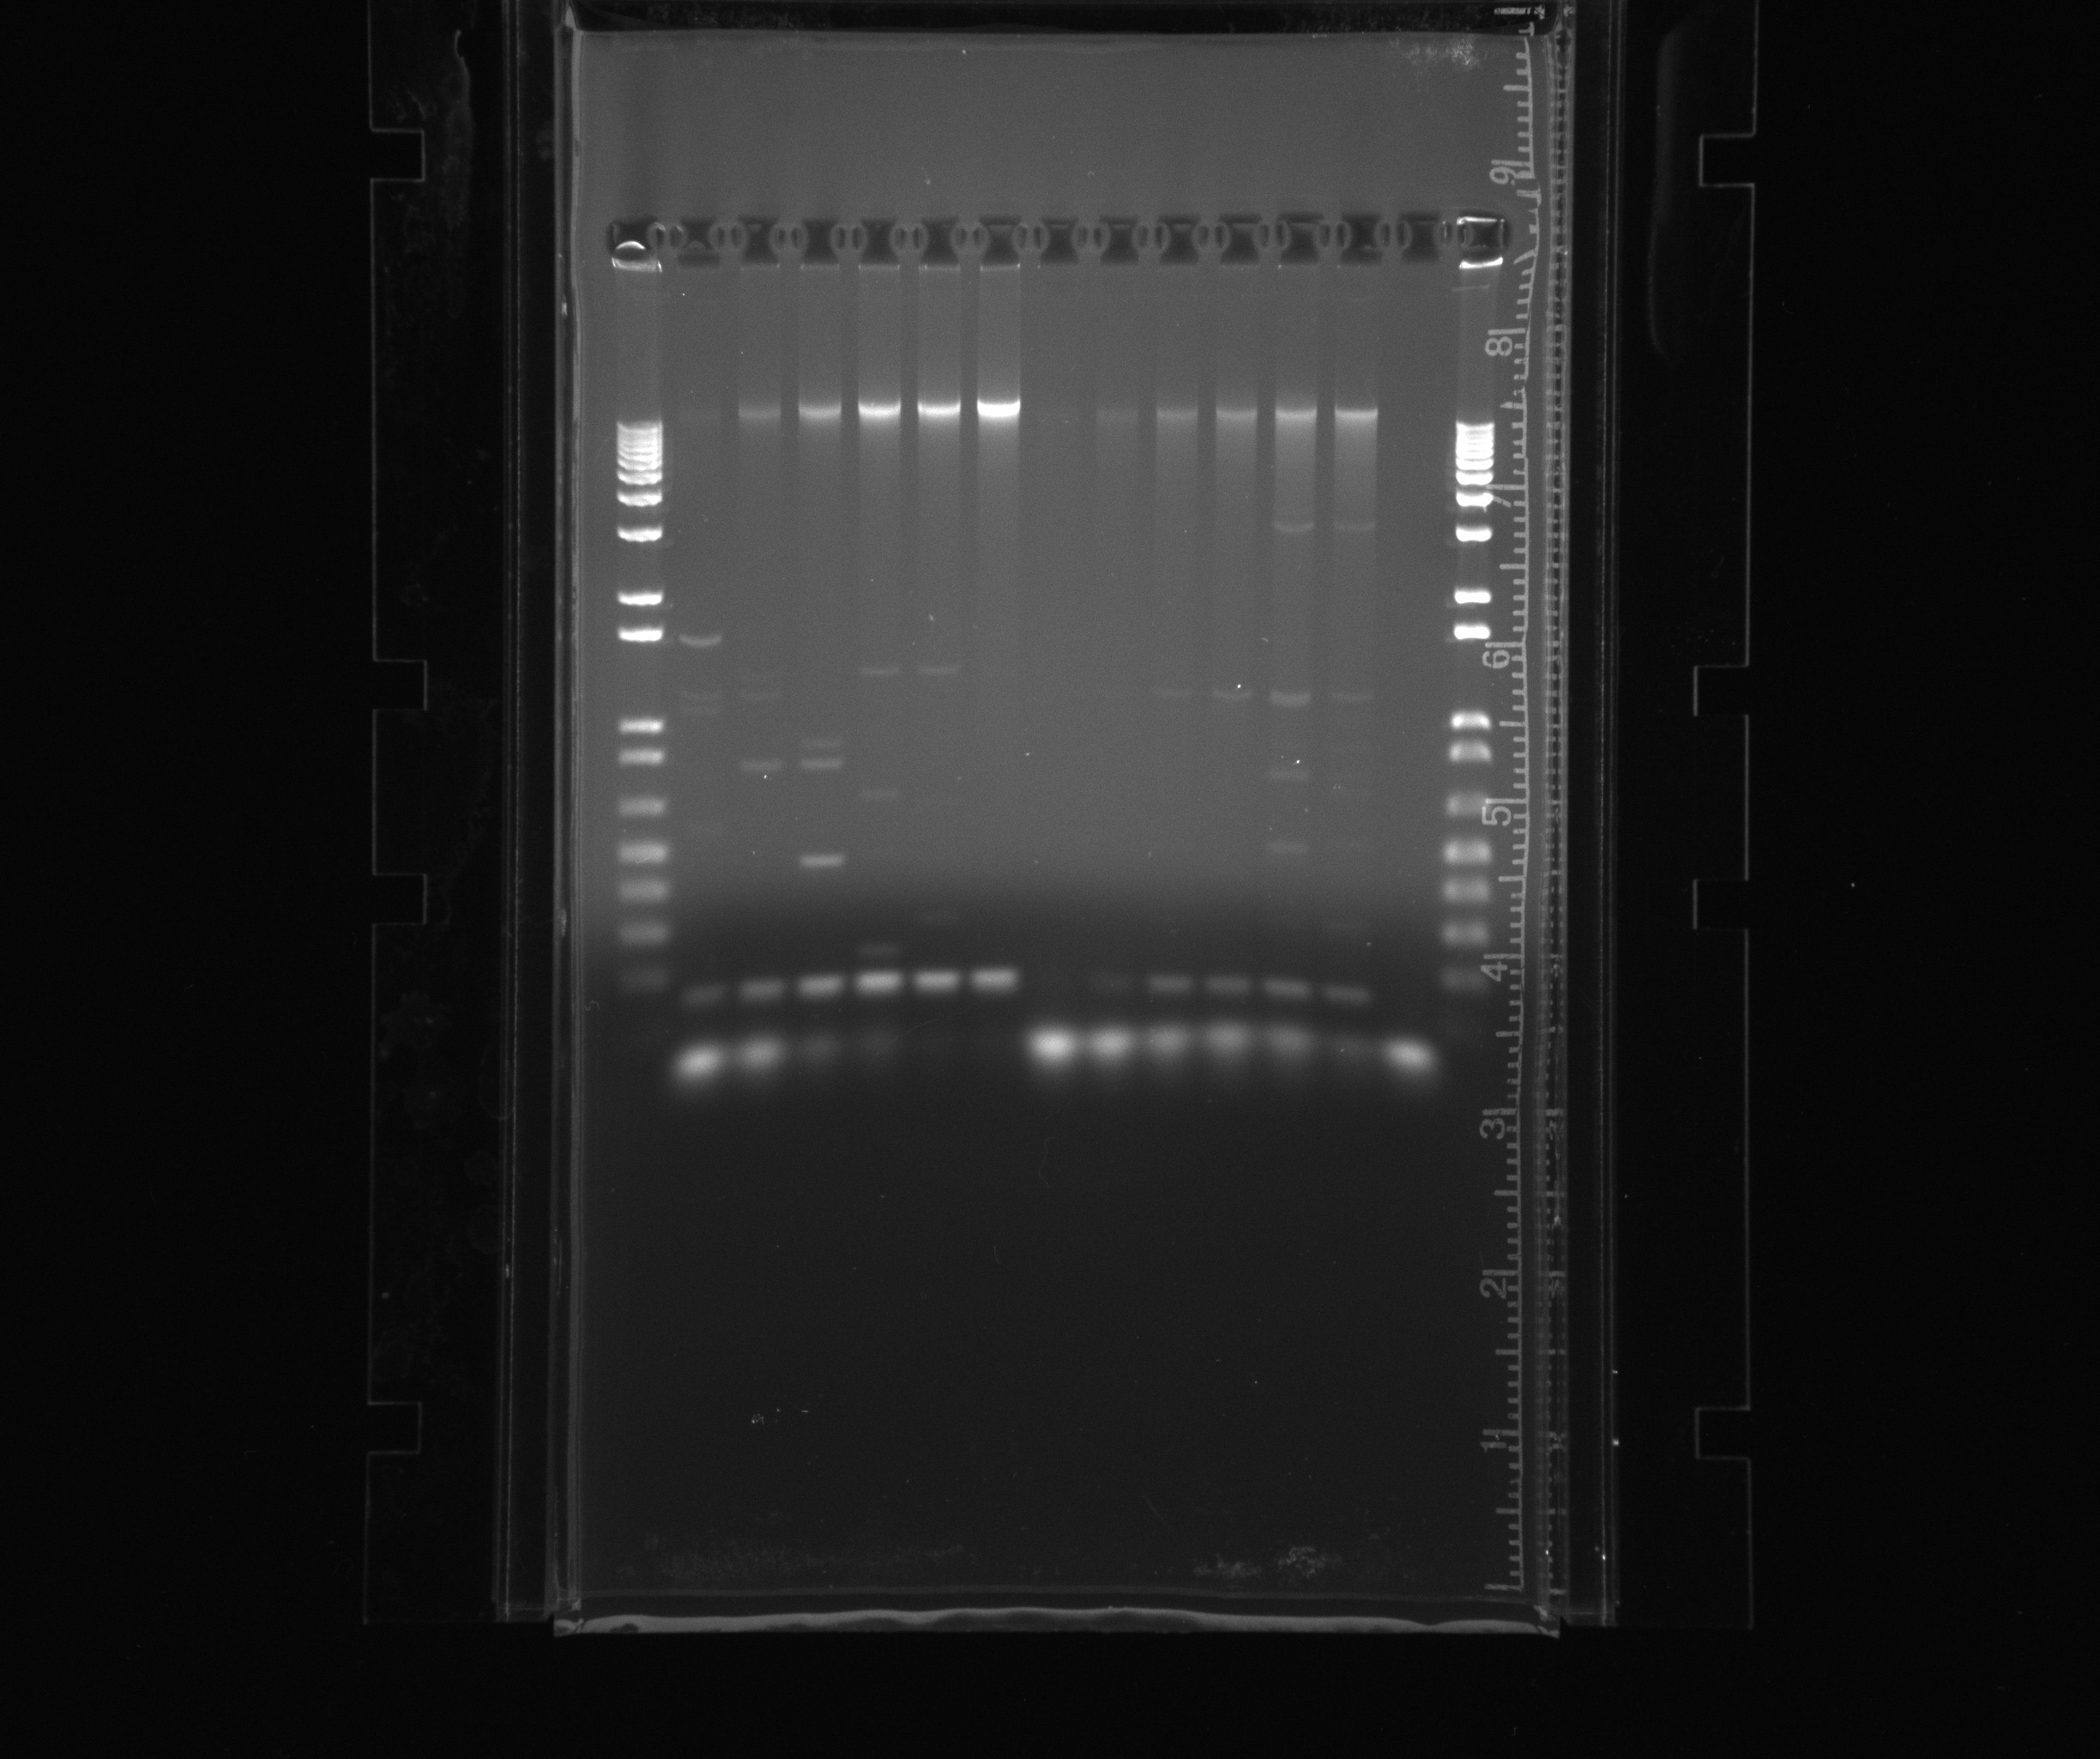 2013 07 30 gel nir genomic dna.jpg